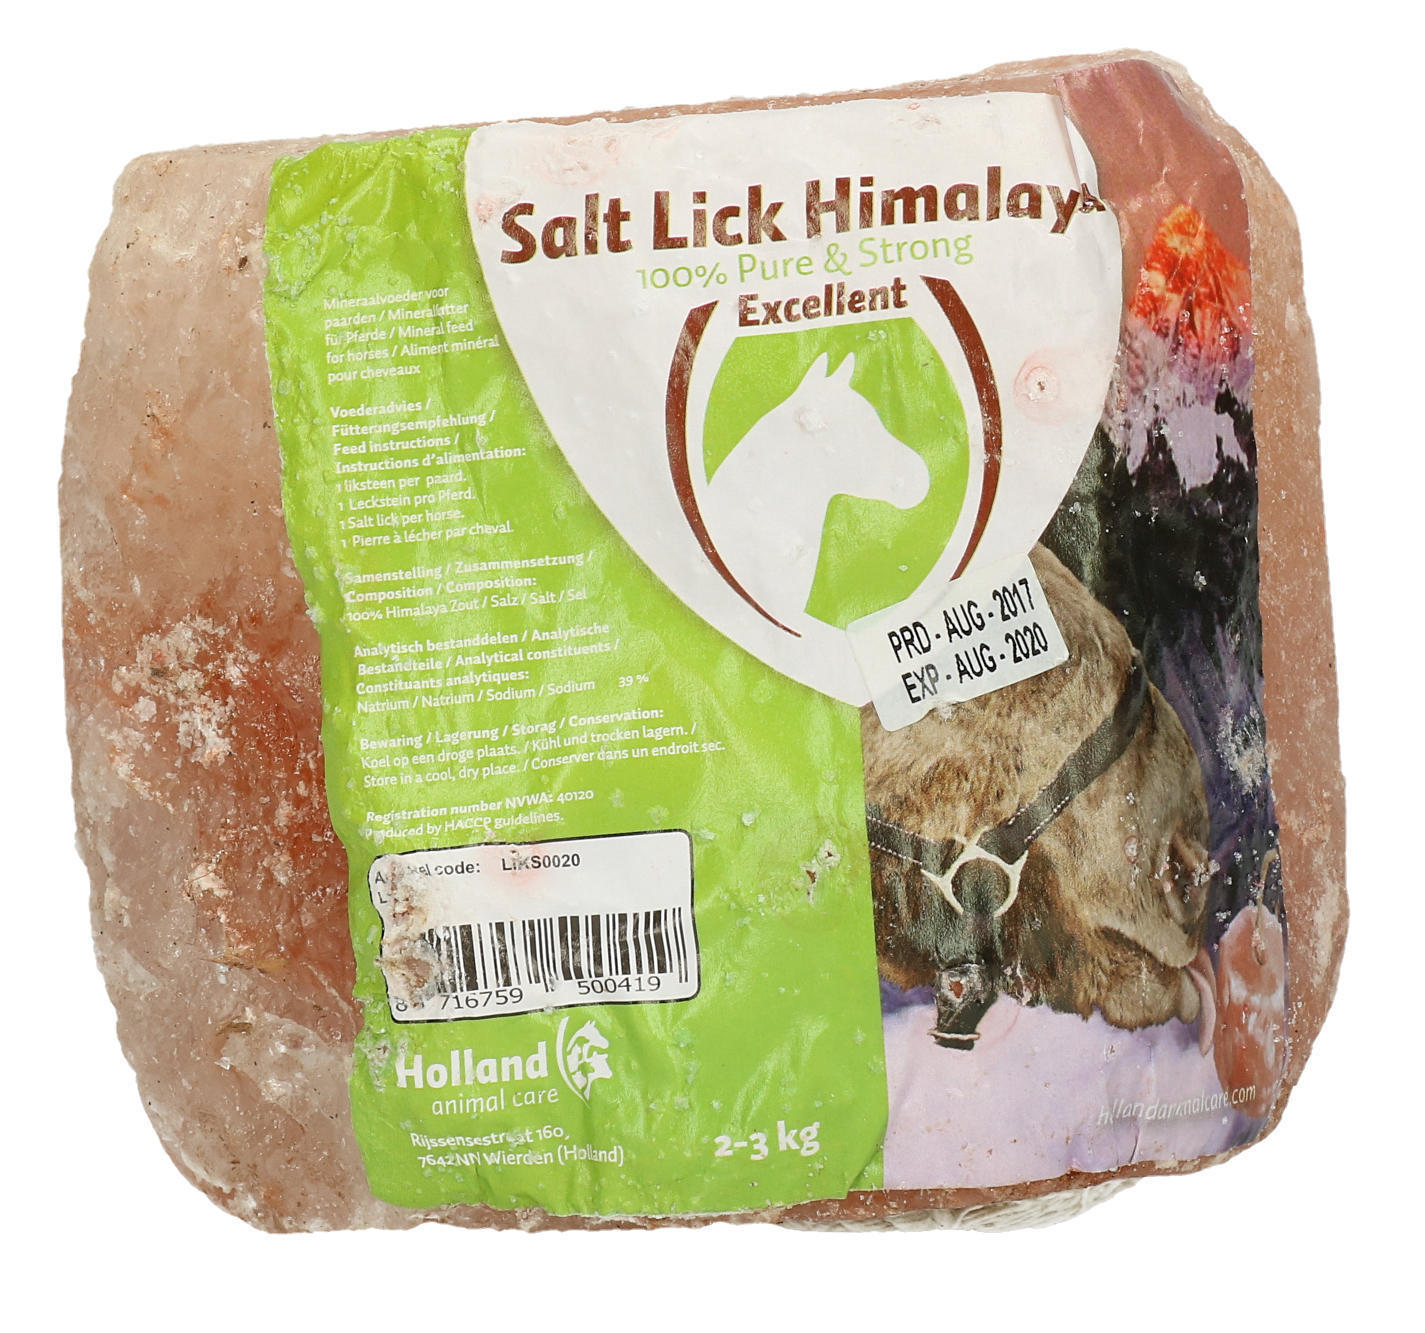 Himalaya salt lick